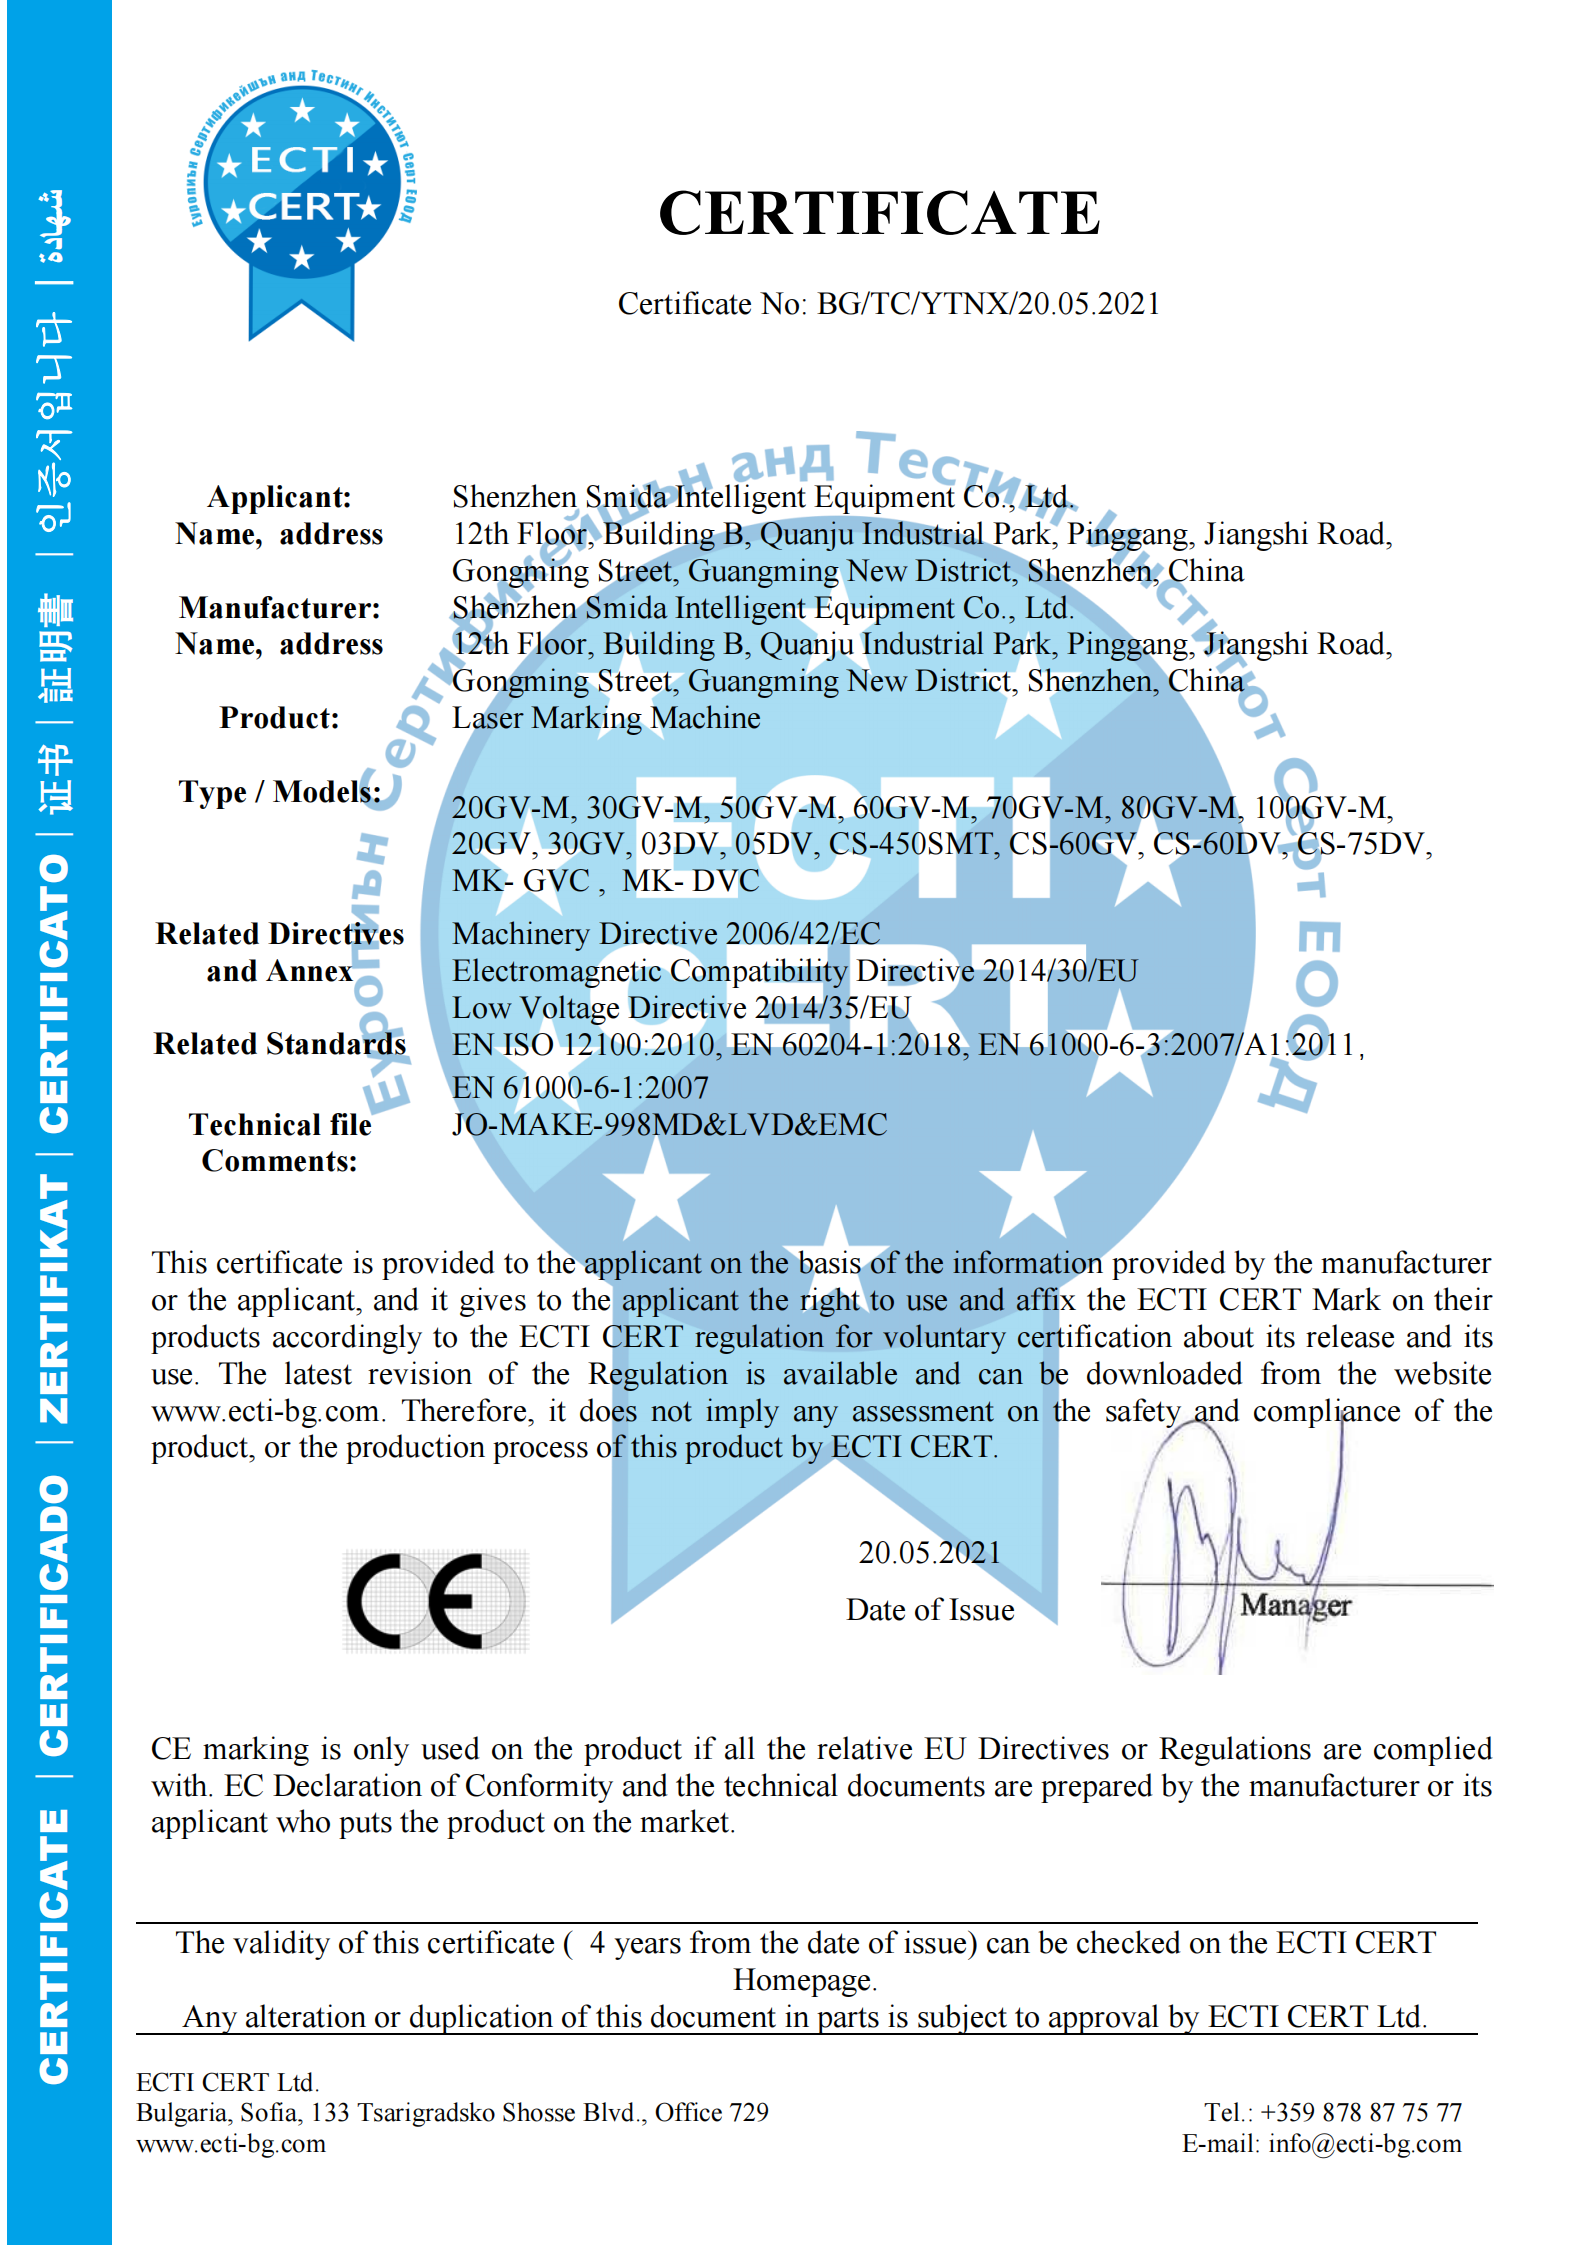 Aghjunghje a certificazione CE per a macchina di marcatura laser